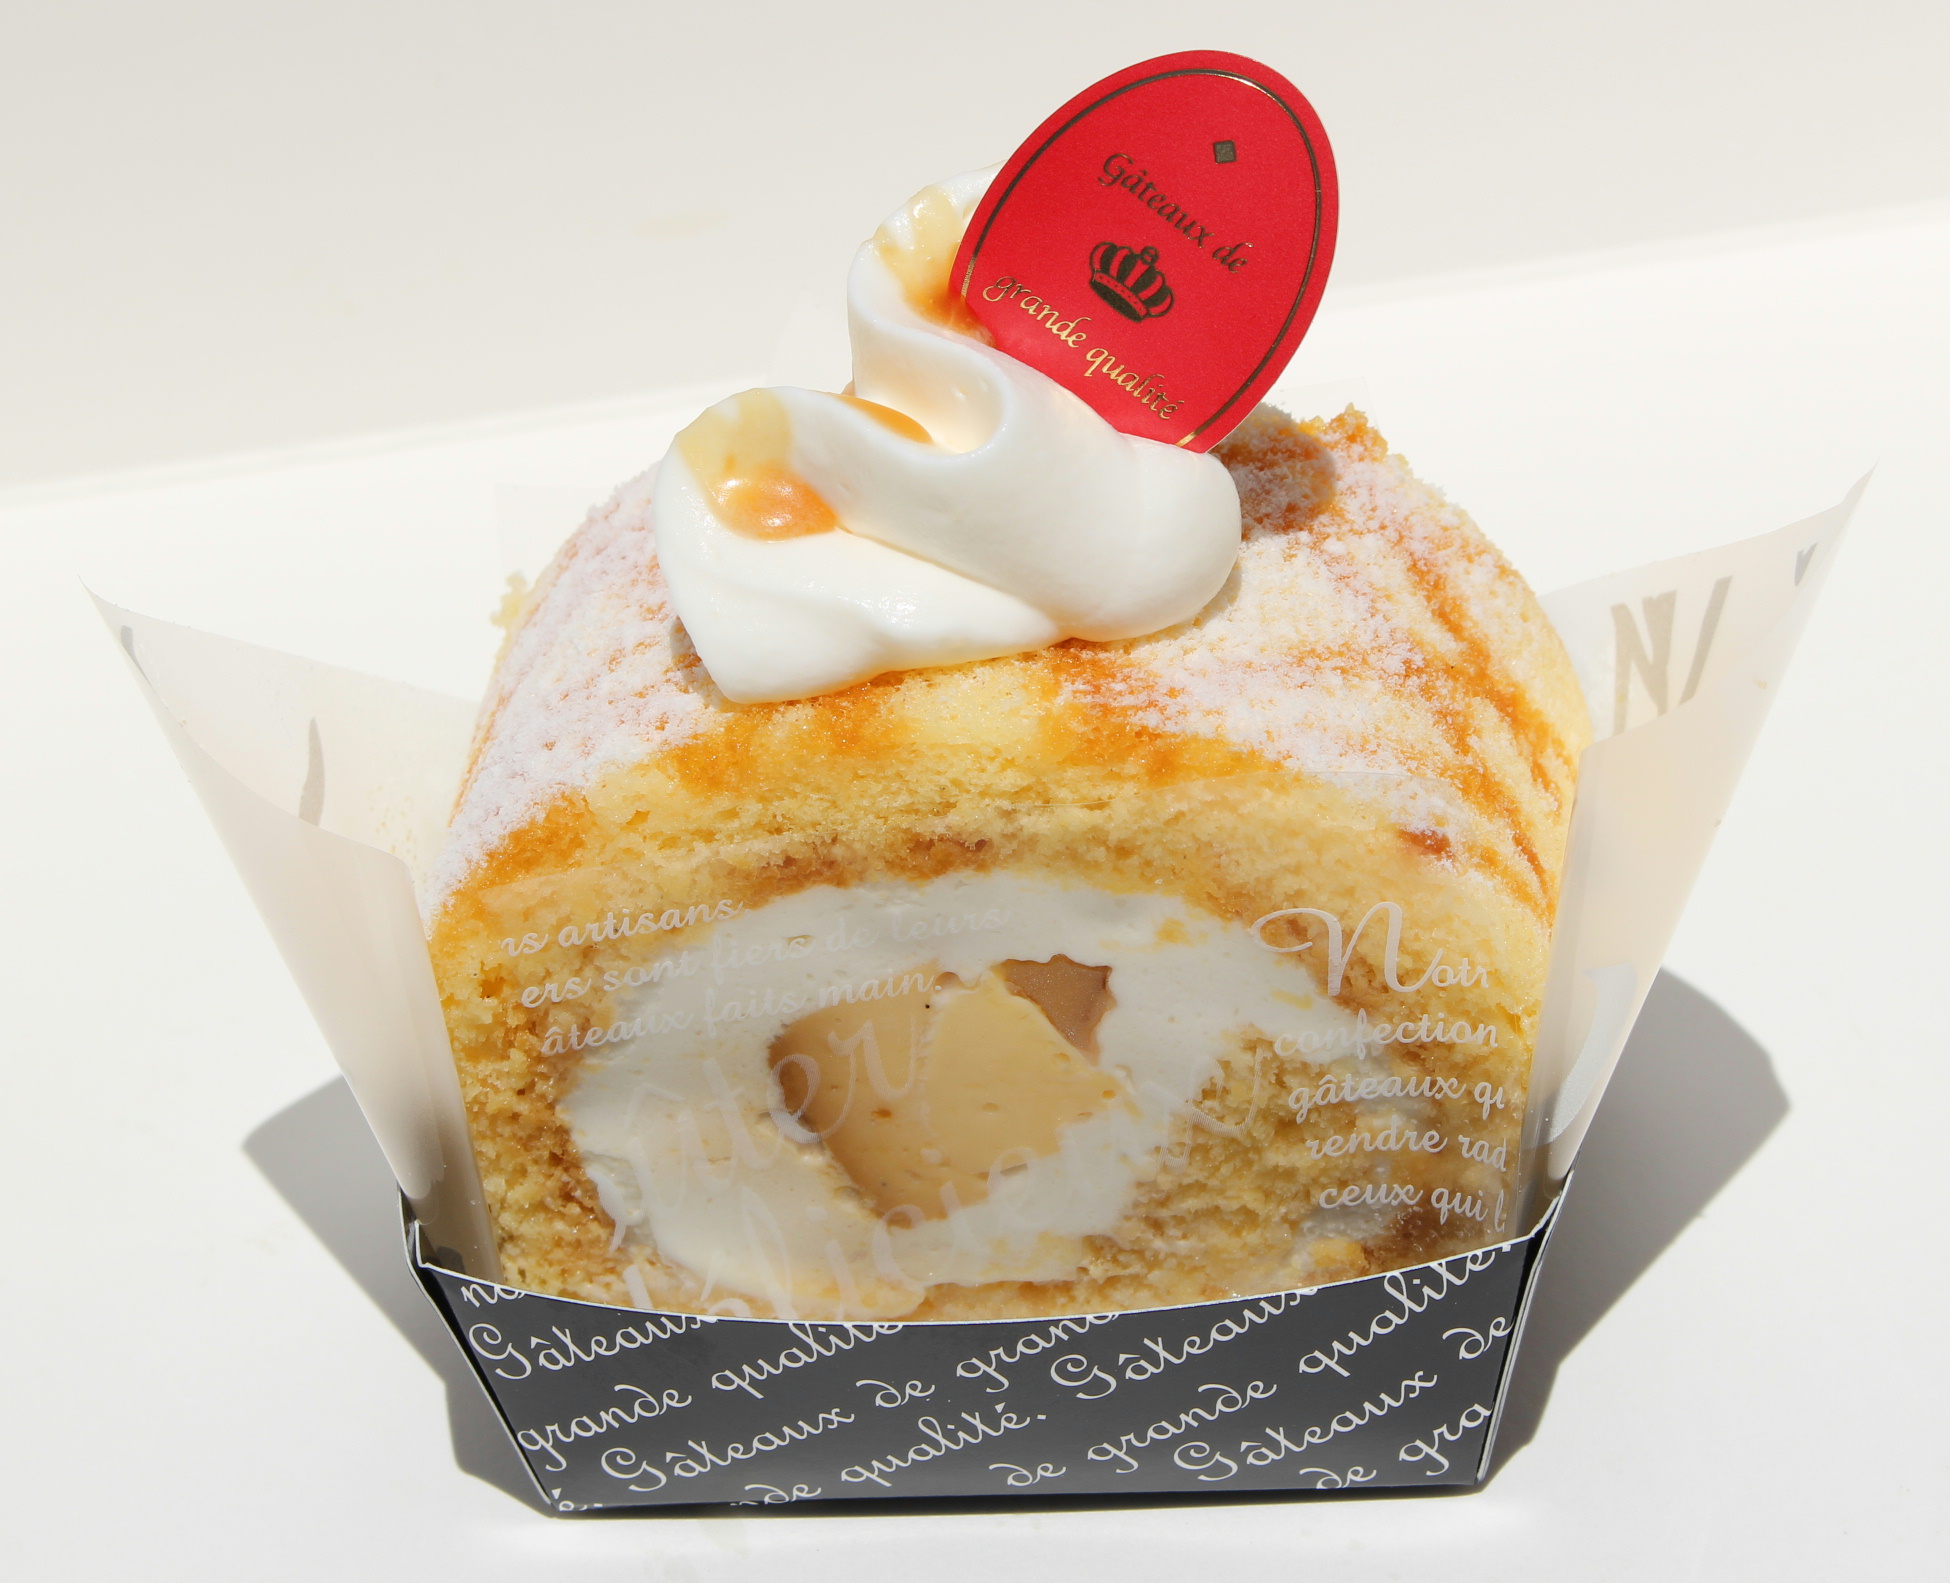 サイドバー ケーキ 木更津 君津 伝統的 フランス菓子 エル プランタン